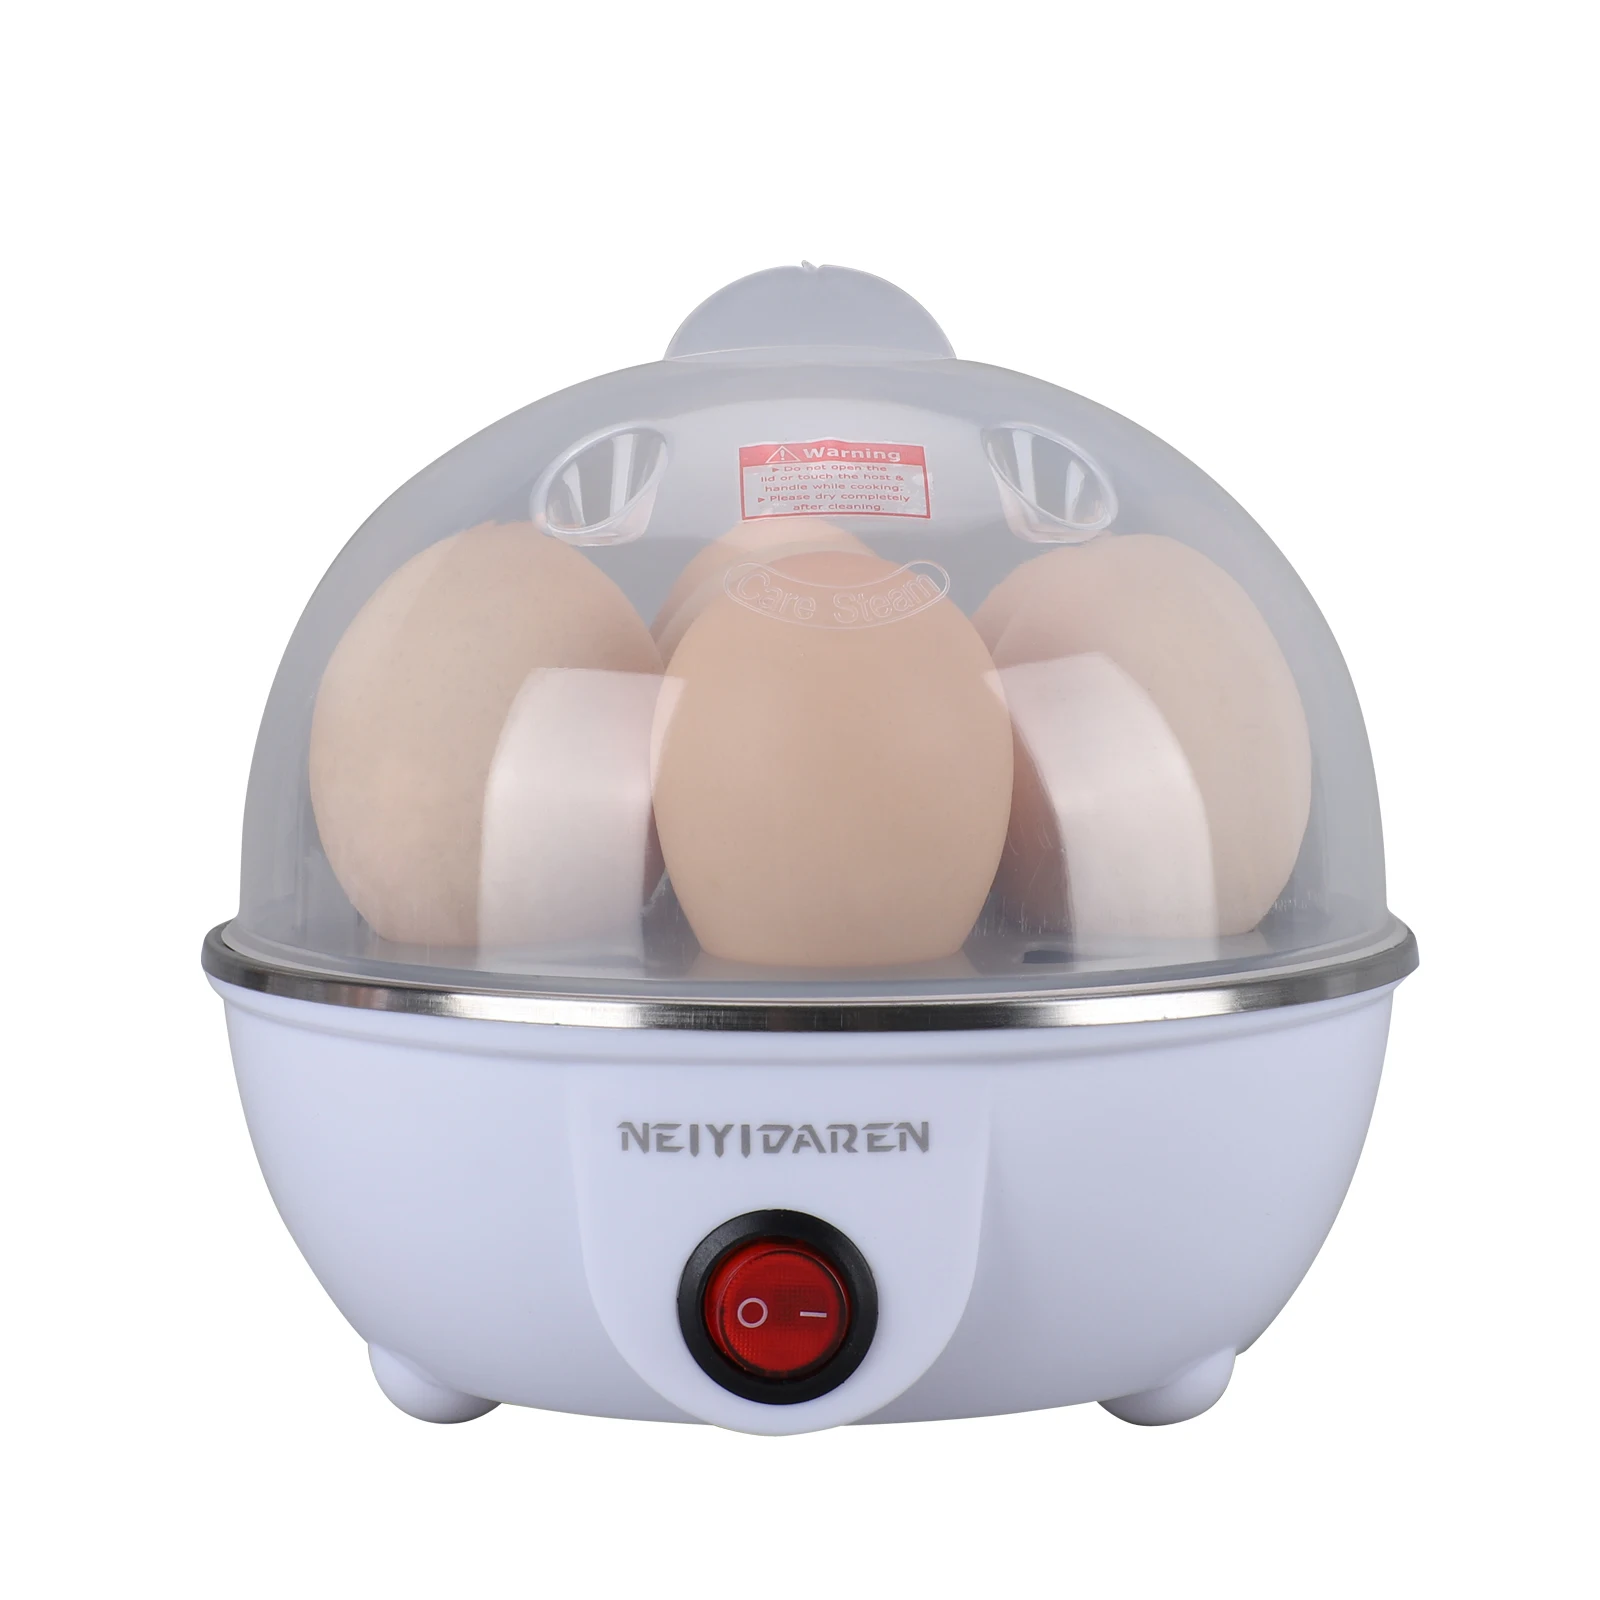 Бытовая кухонная техника, бытовая портативная автоматическая мини-печь для яиц, электрическая пластиковая Пароварка для кипячения яиц